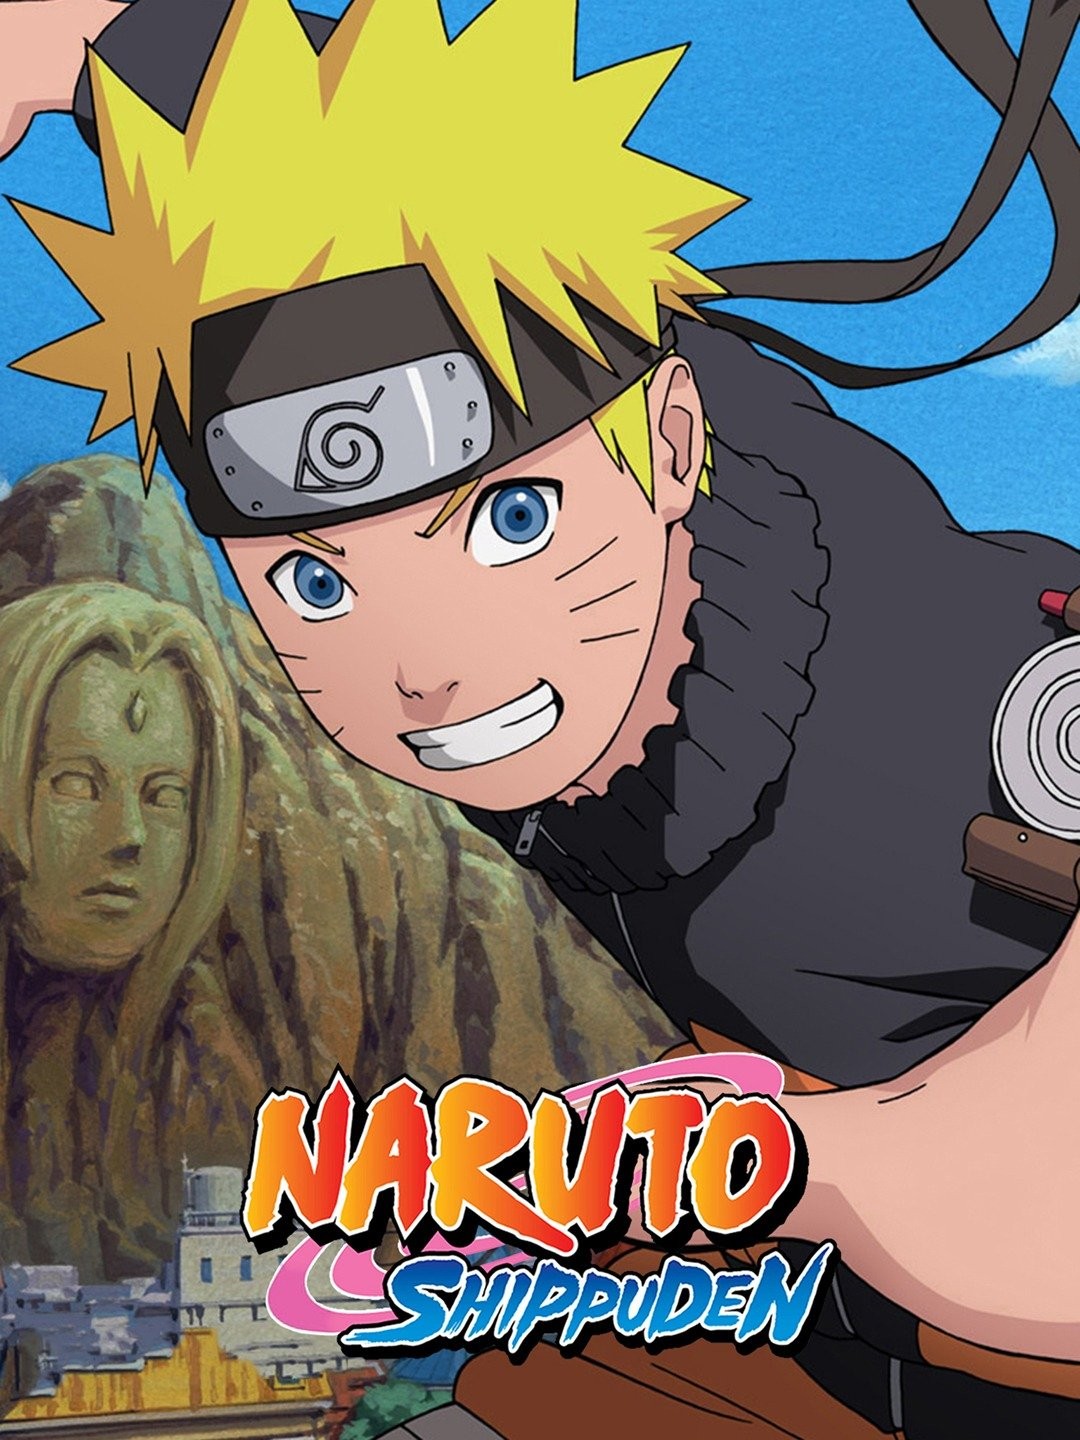 Watch Naruto Shippuden Episode 84 Online - Kakuzu's Abilities